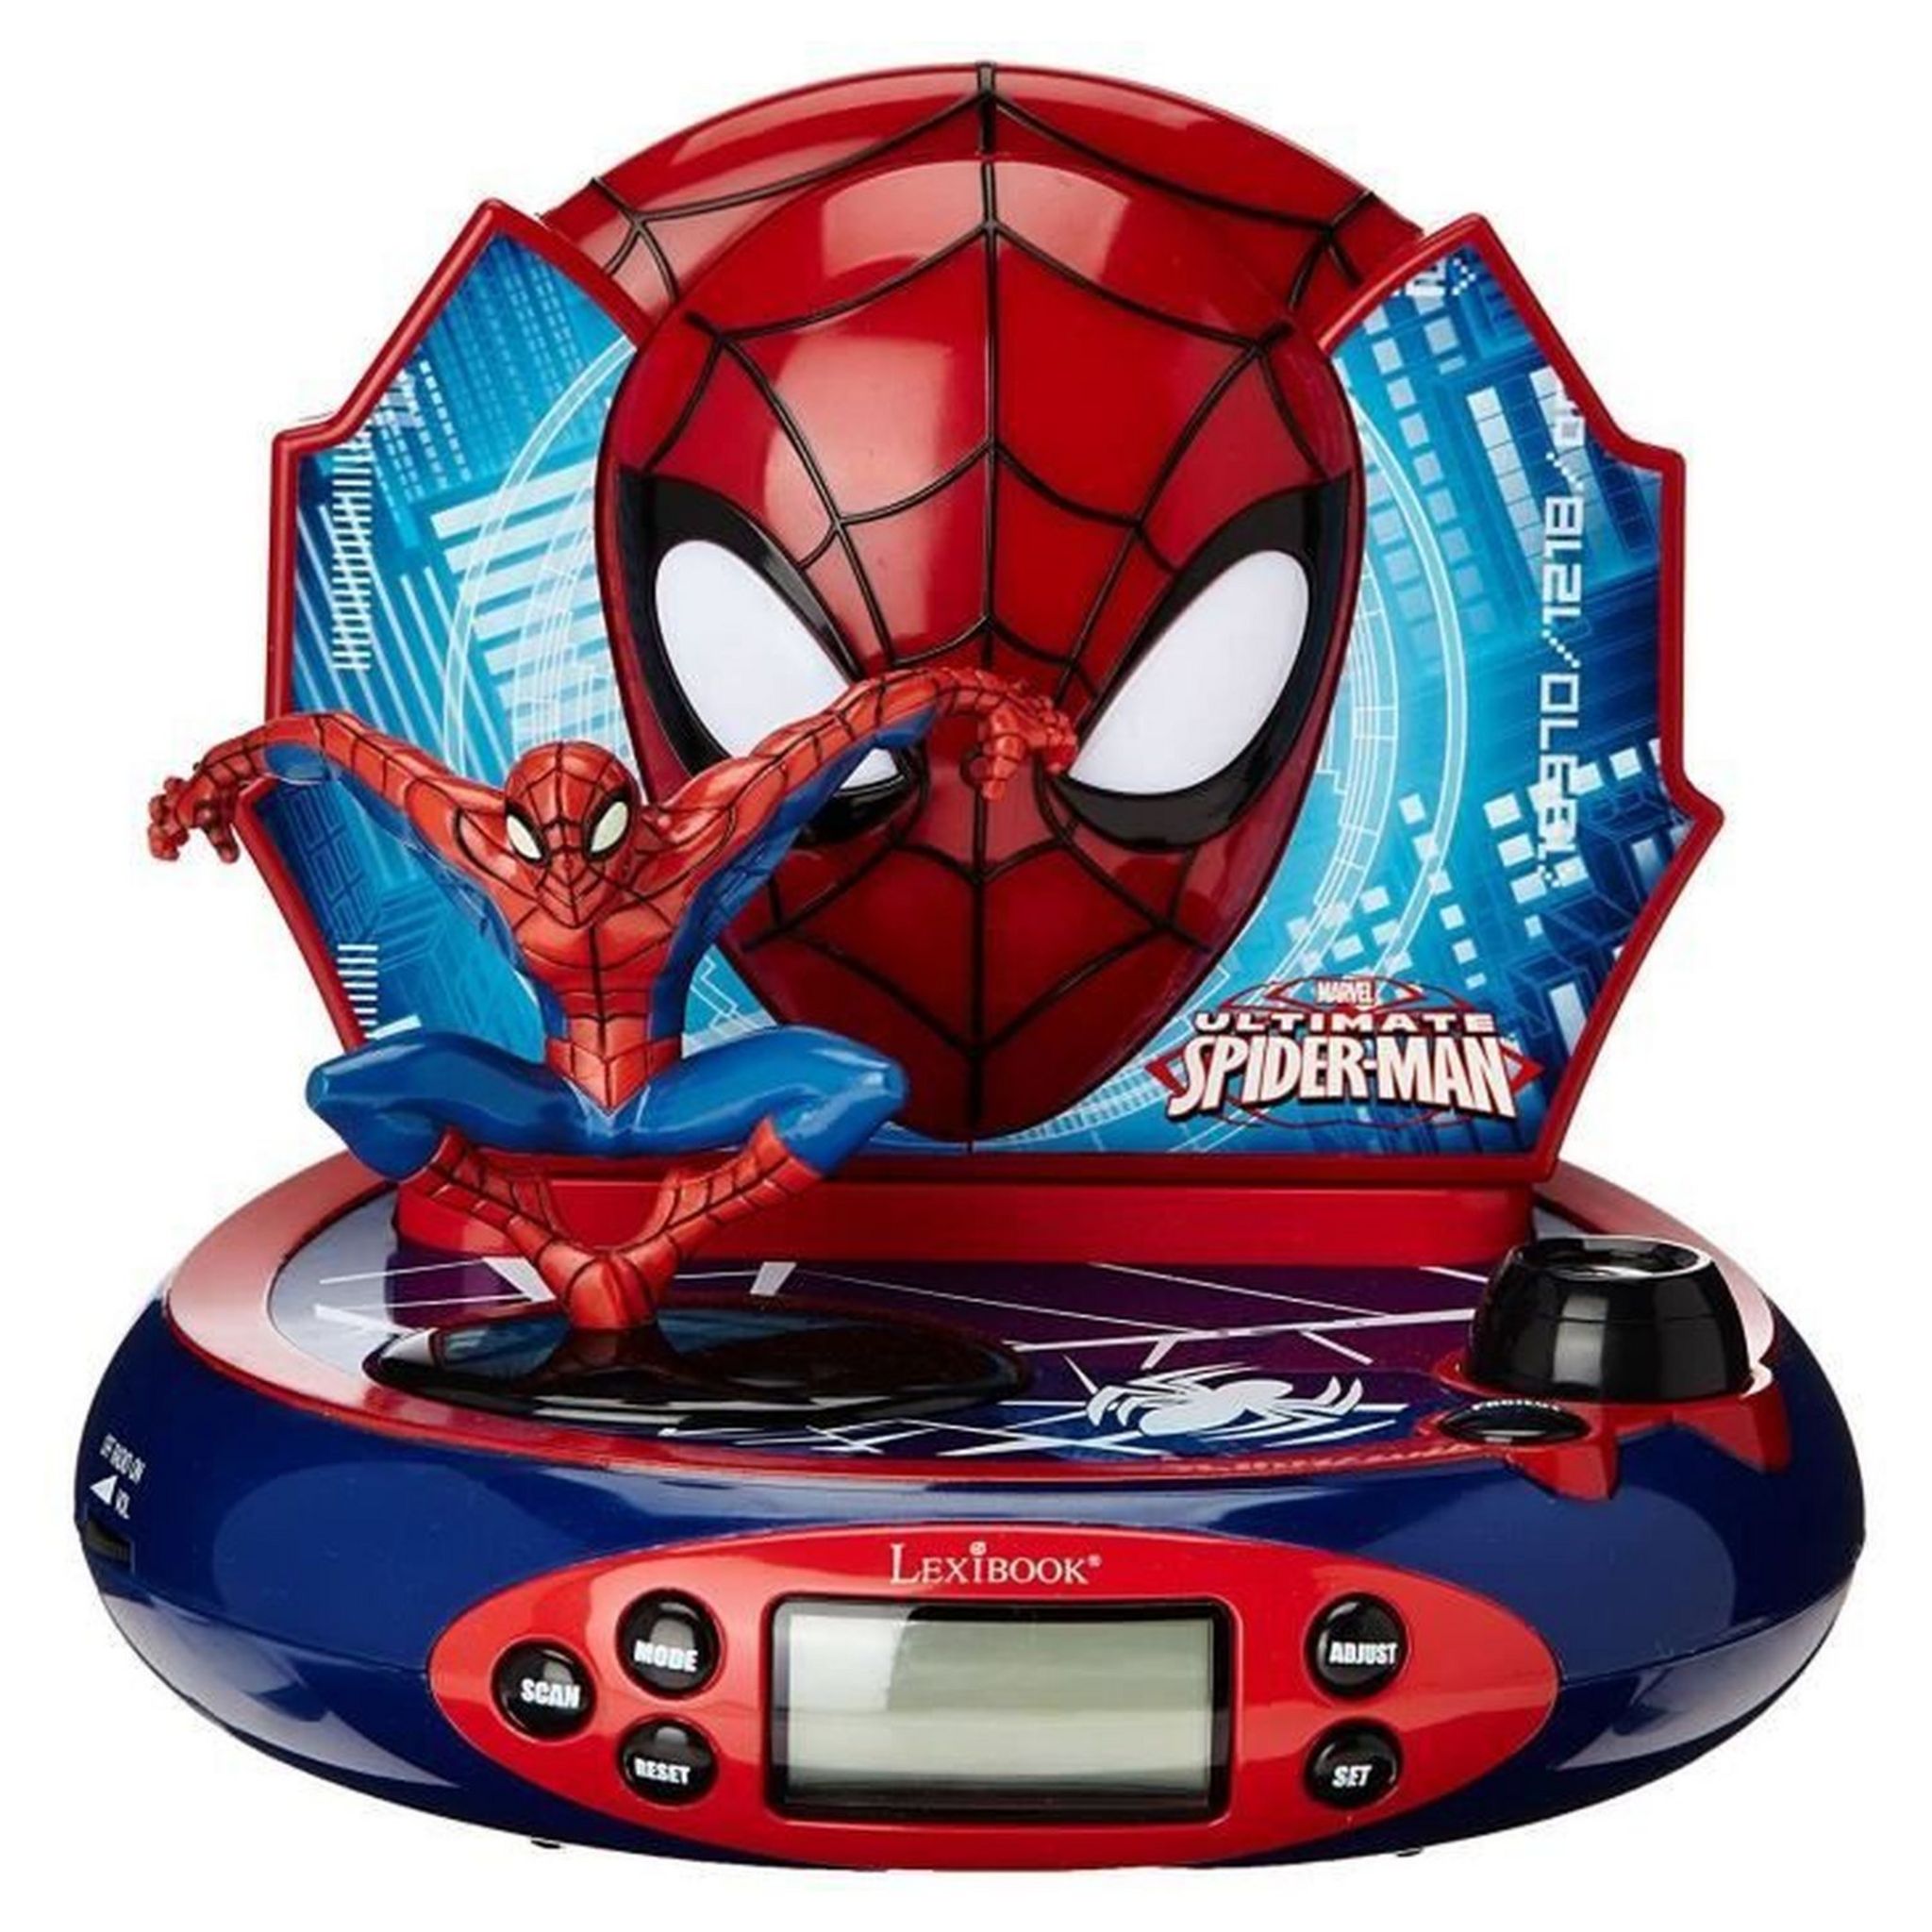 LEXIBOOK Radio Réveil Projecteur Spider-Man RP500SP Bleu Rouge pas cher 